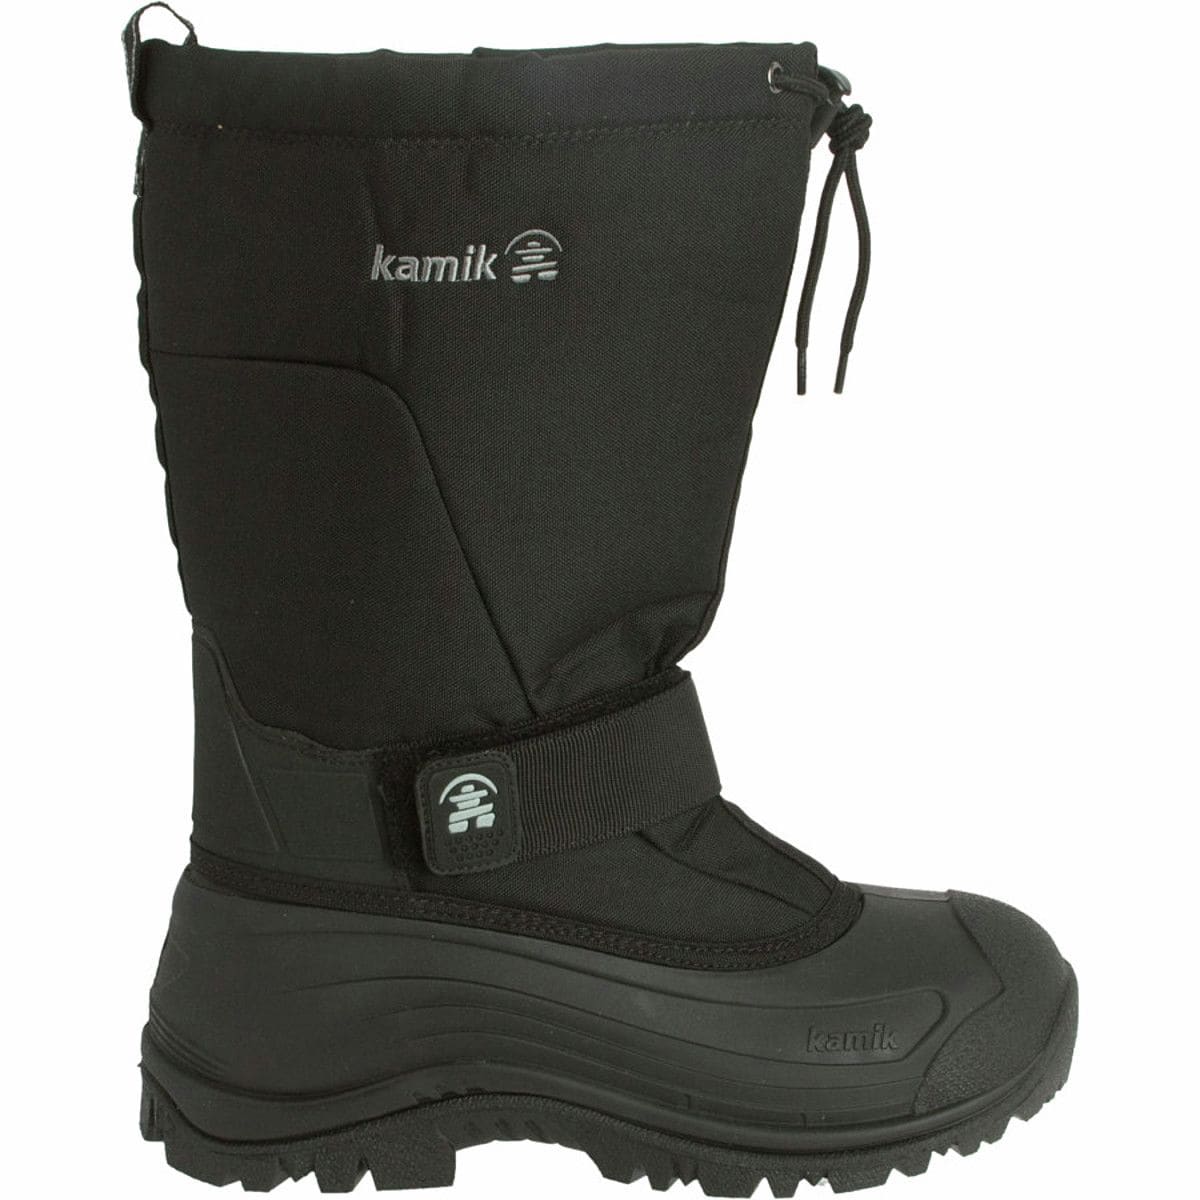 Kamik Greenbay 4 Boot - Men's - Footwear